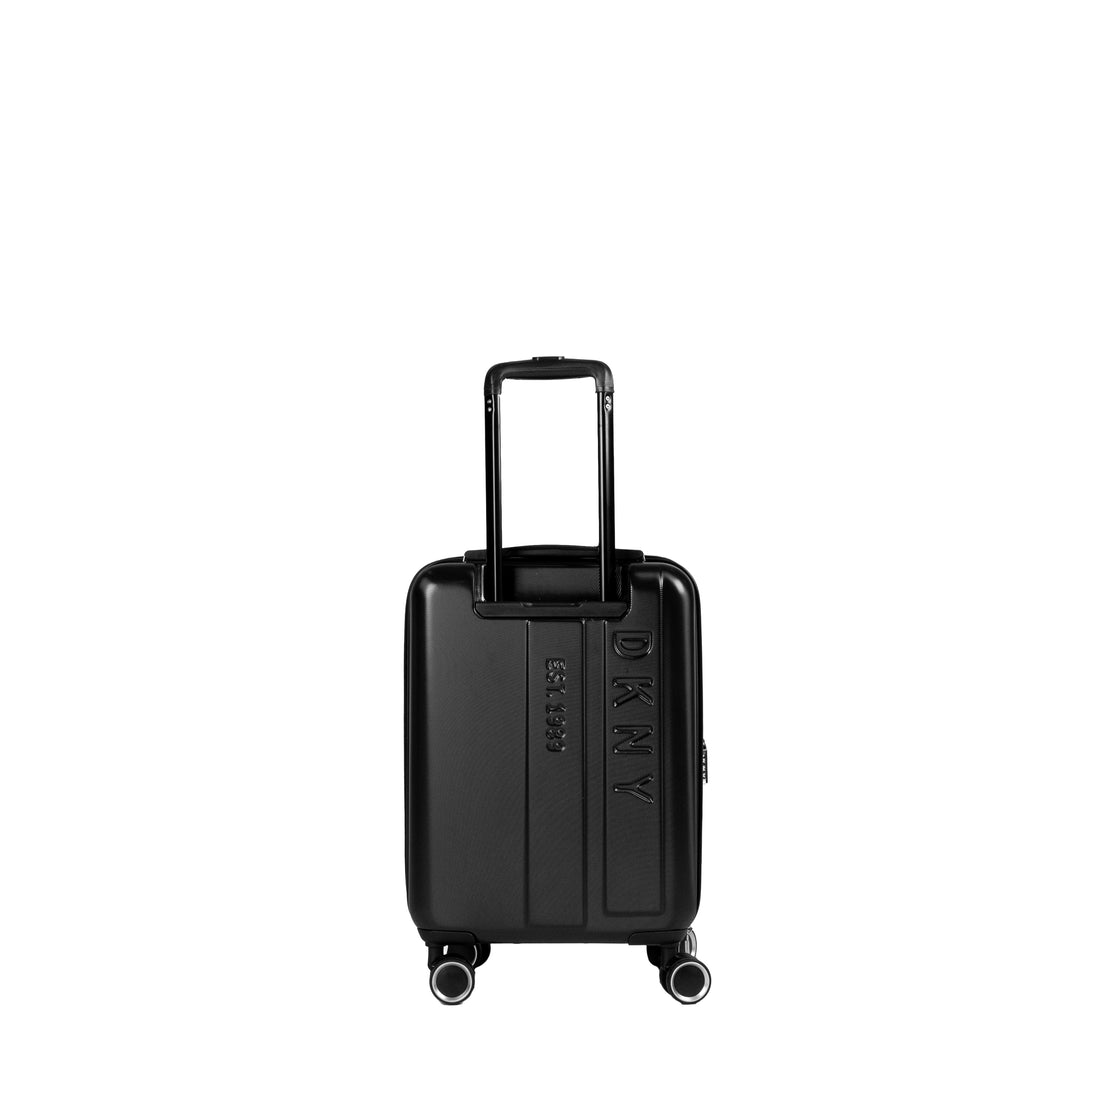 DKNY Black Cabin Luggage